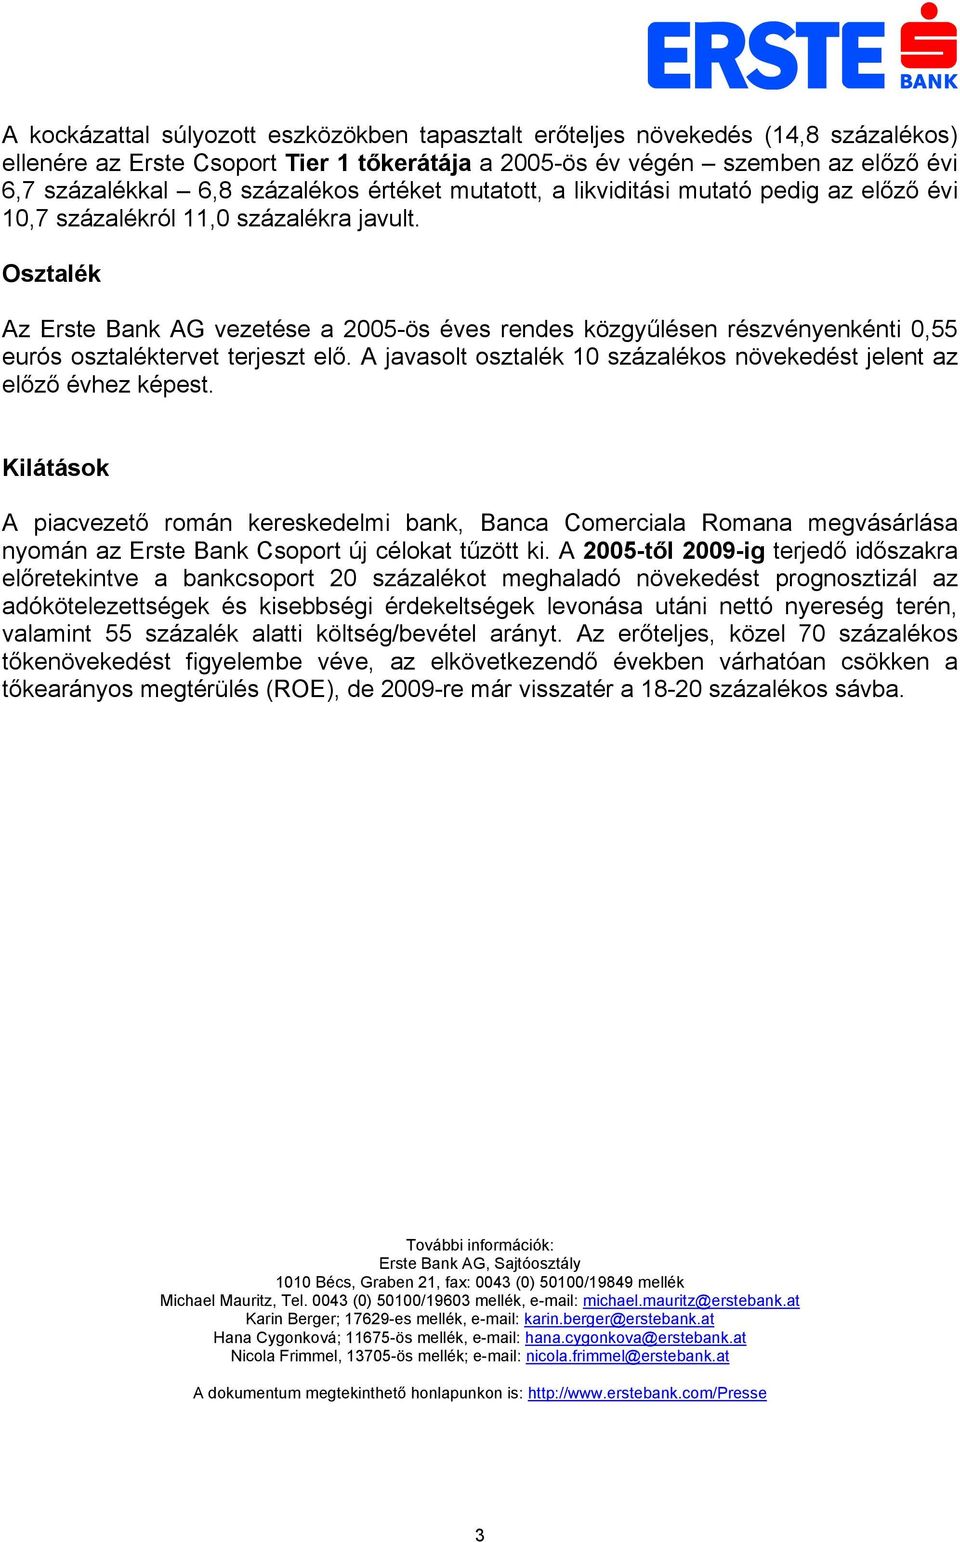 Osztalék Az Erste Bank AG vezetése a 2005-ös éves rendes közgyűlésen részvényenkénti 0,55 eurós osztaléktervet terjeszt elő. A javasolt osztalék 10 százalékos növekedést jelent az előző évhez képest.